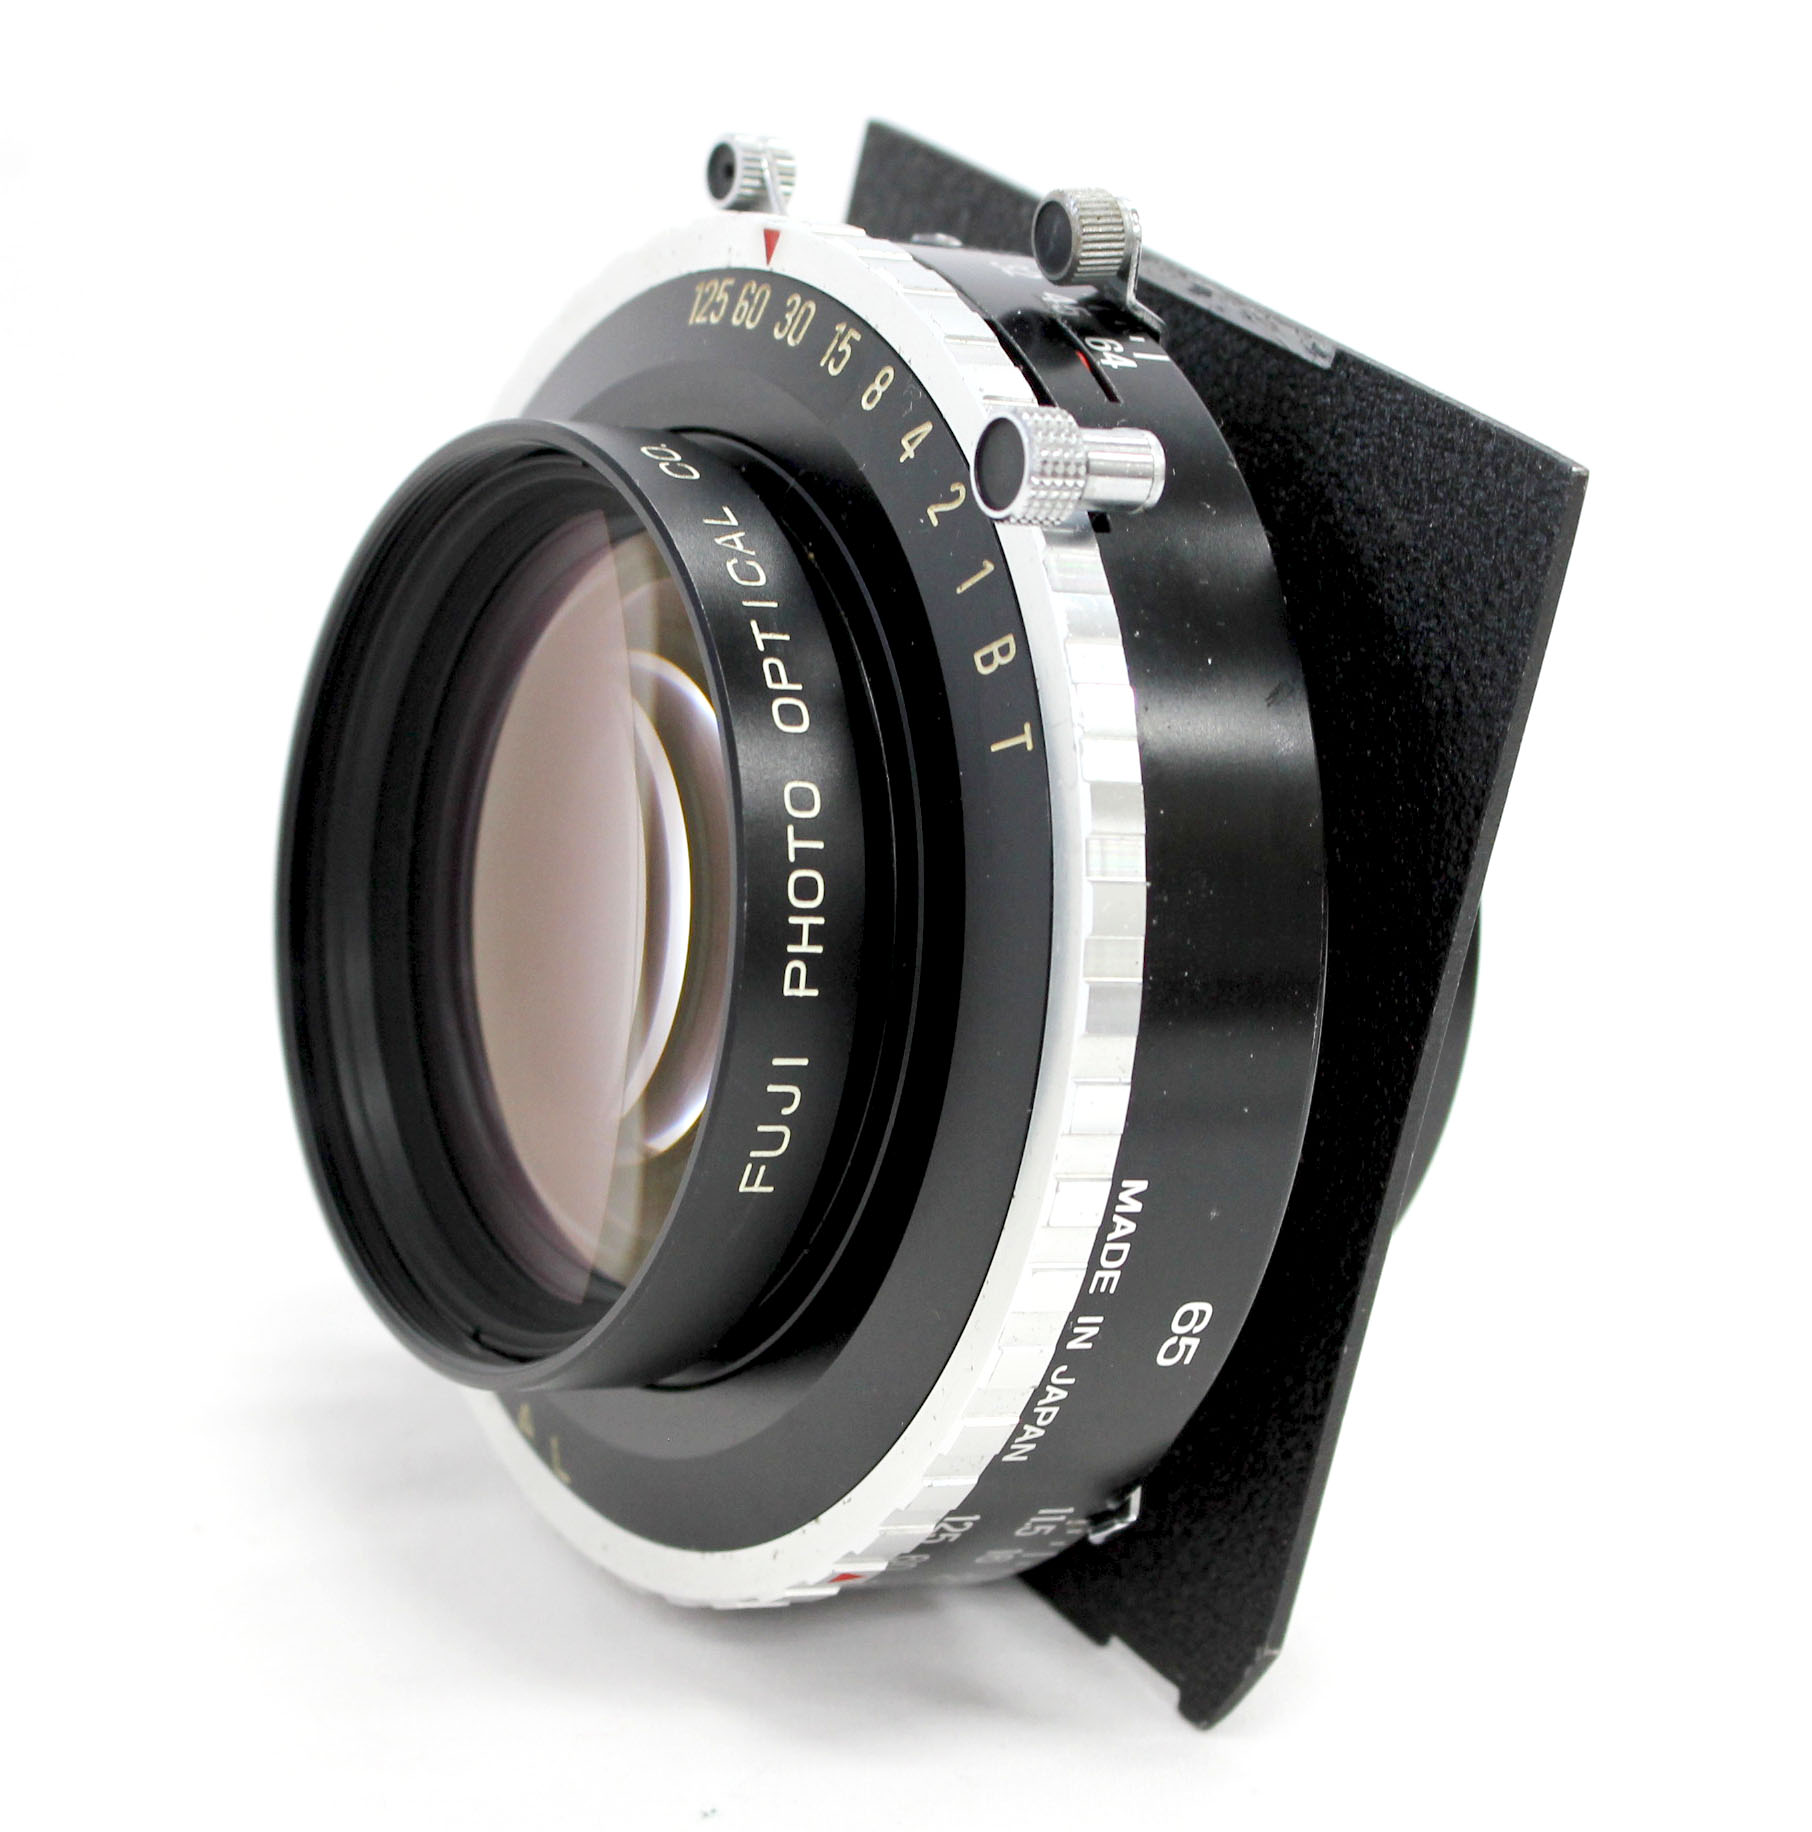  Fuji Fujinon C 600mm F/11.5 4x5 8x10 Large Format Lens Copal No.3 Shutter from Japan Photo 1